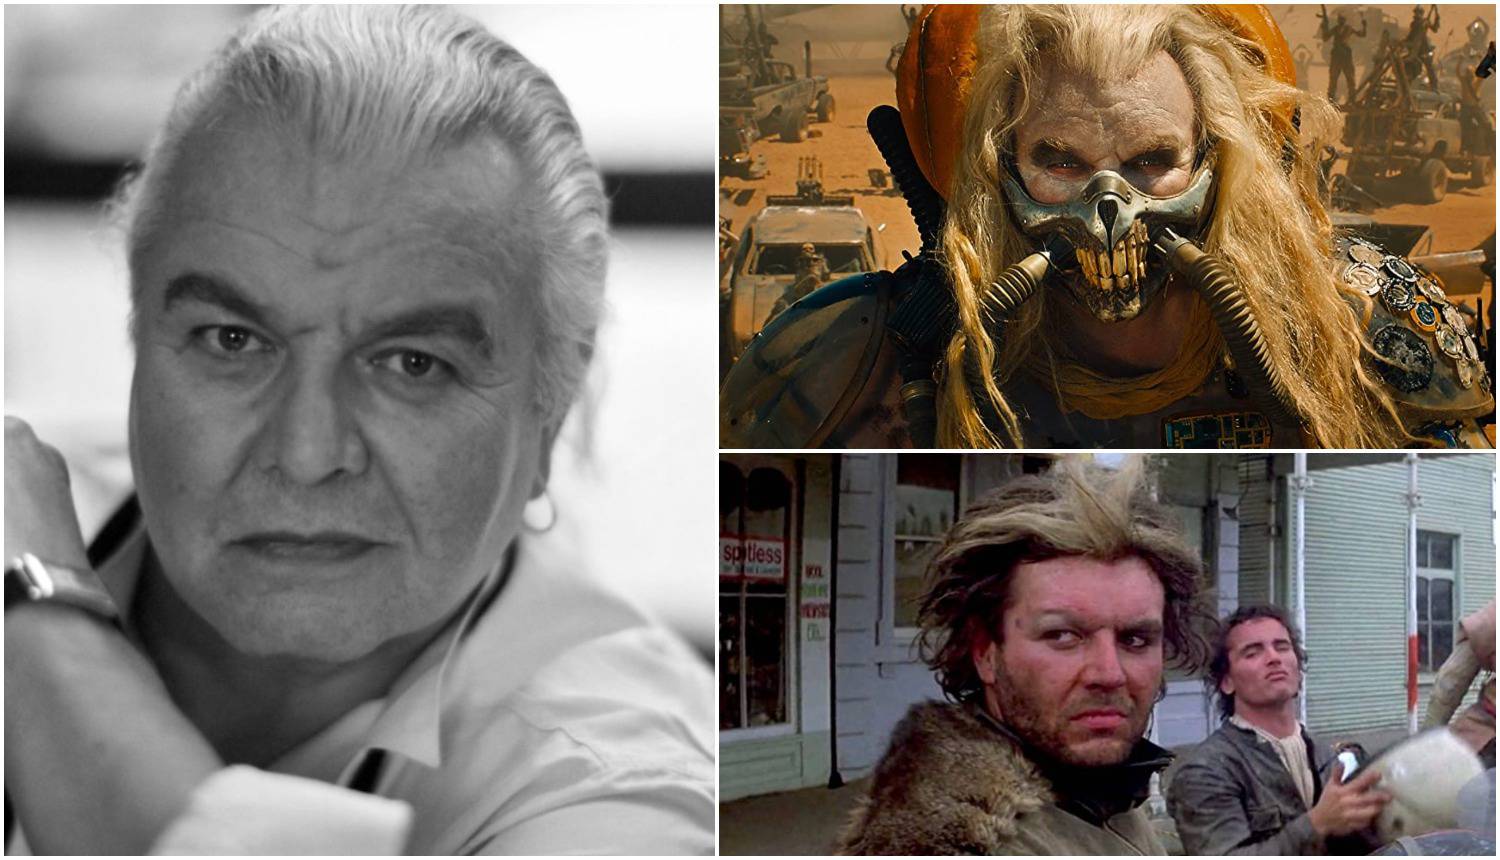 Umro glumac koji se proslavio kao negativac u 'Mad Max' sagi